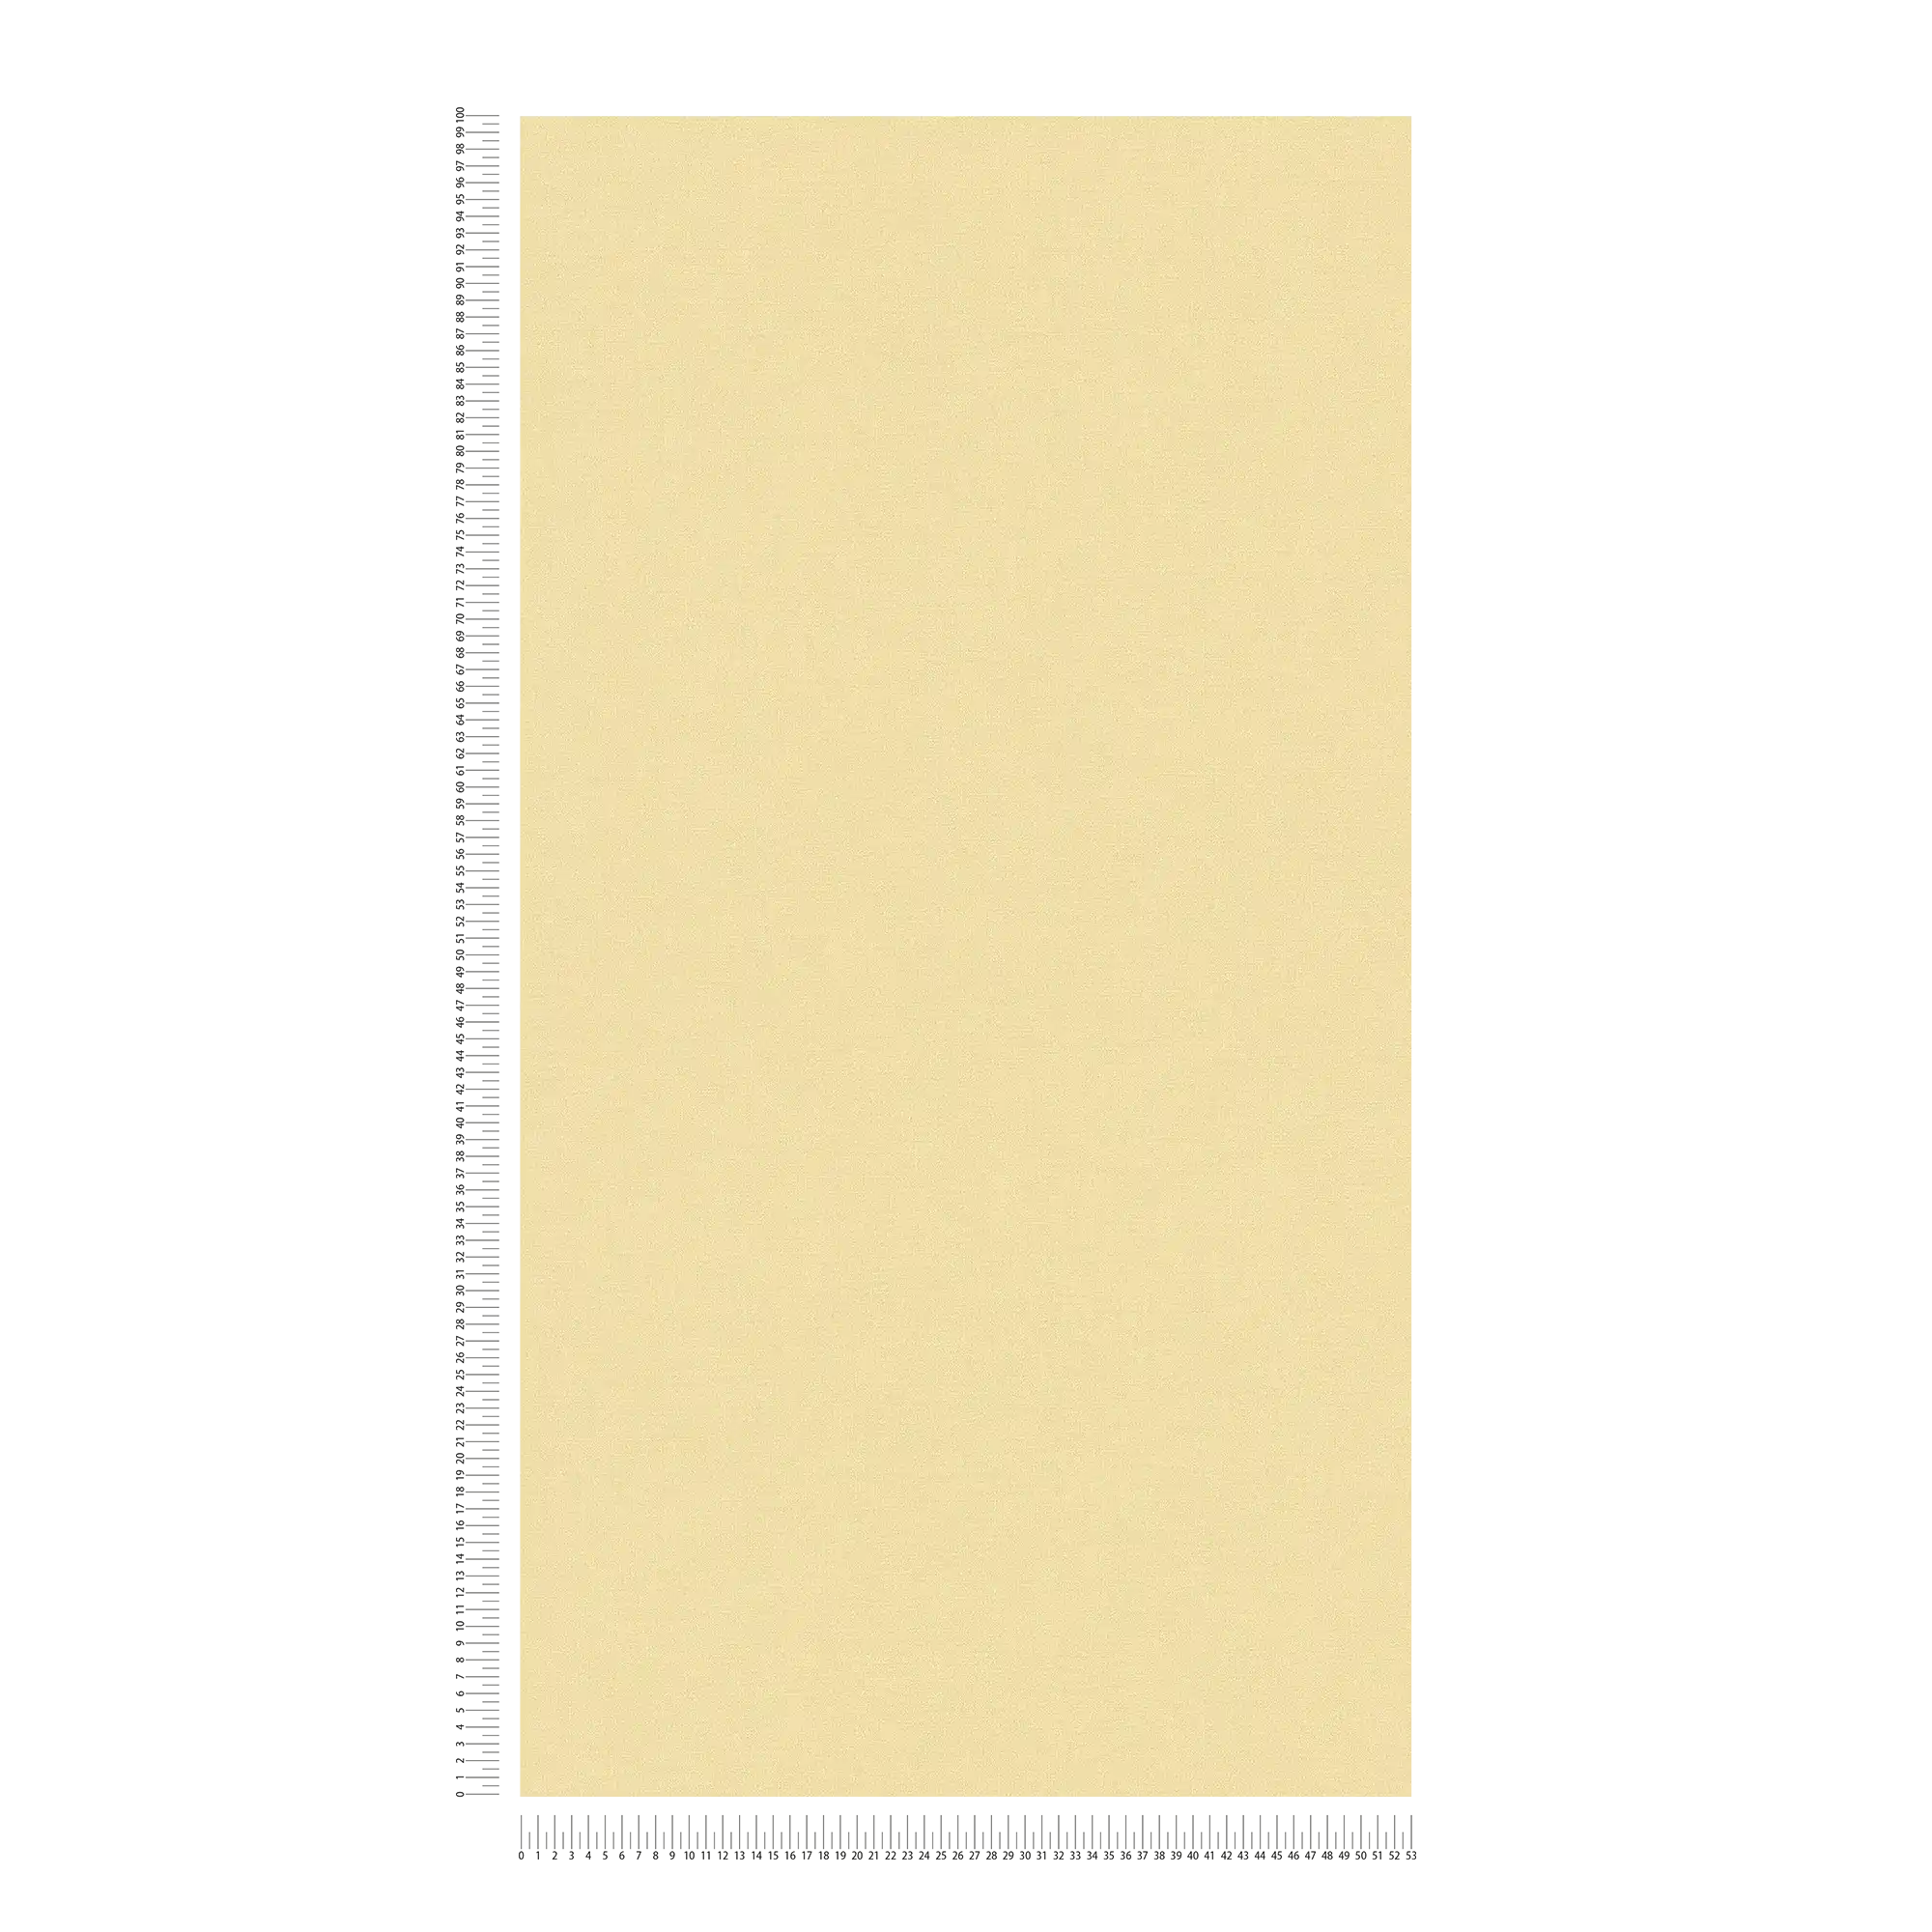             Einfarbige Uni-Vliestapete in warmen Farbton – Gelb
        